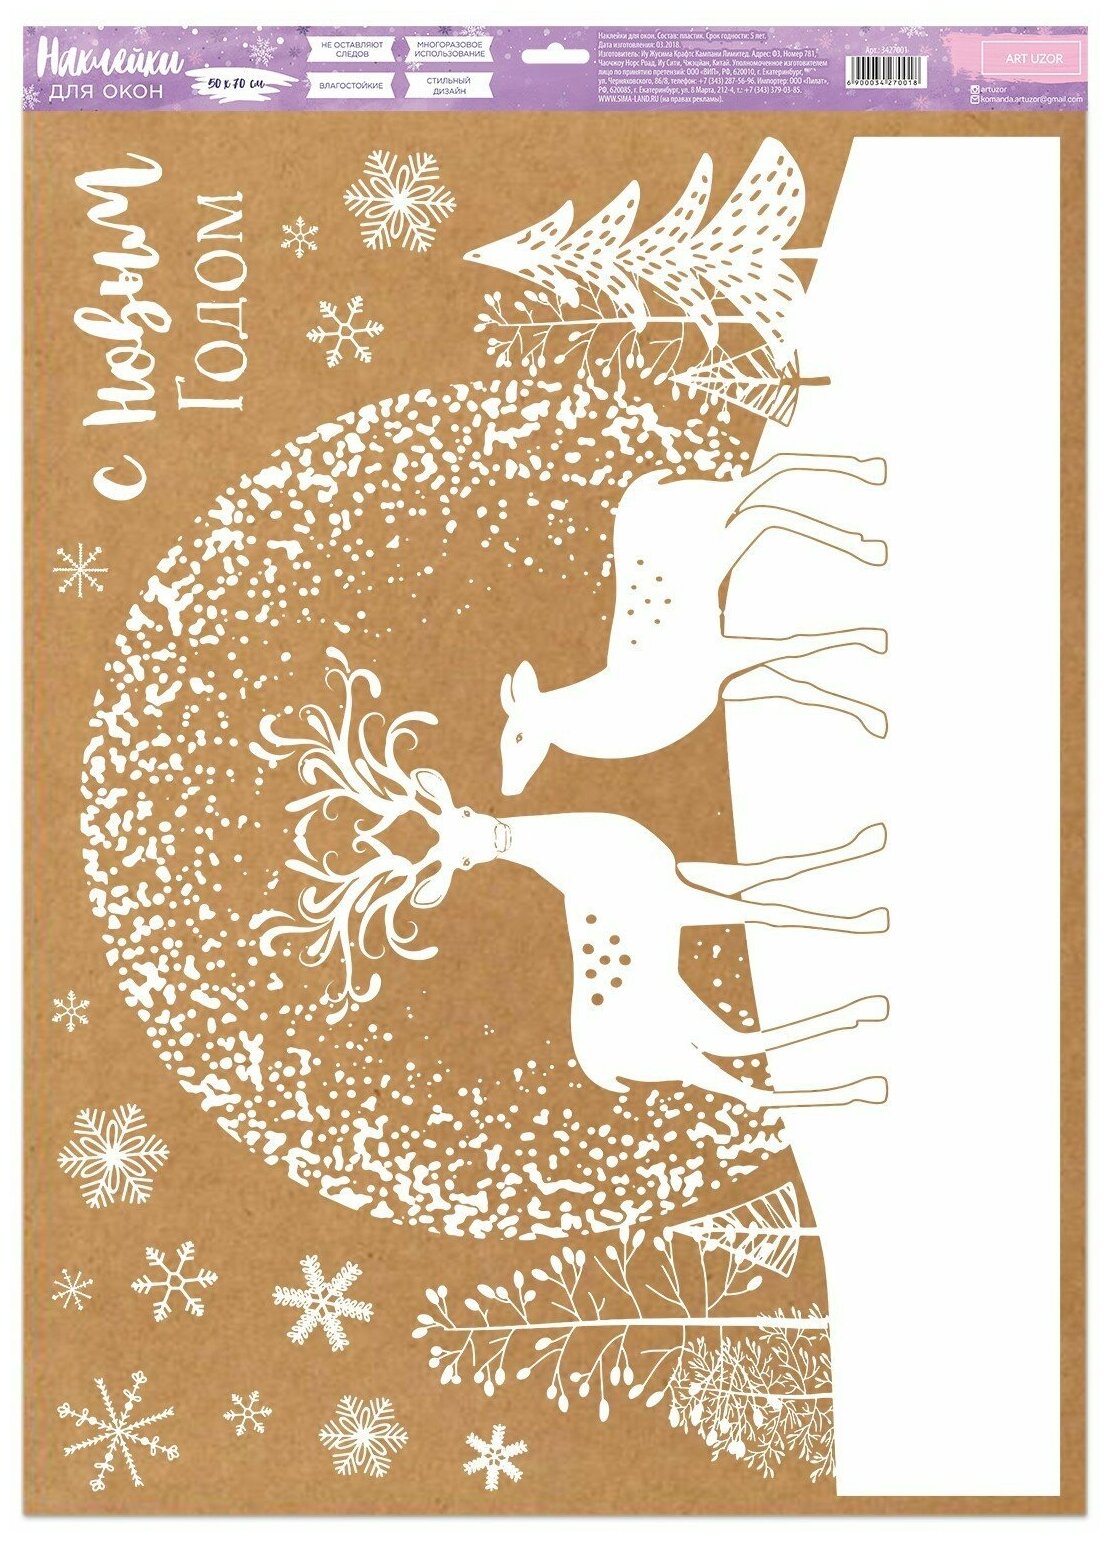 Наклейка для окон «Волшебство рядом» , 50 х 70 см / Новый год